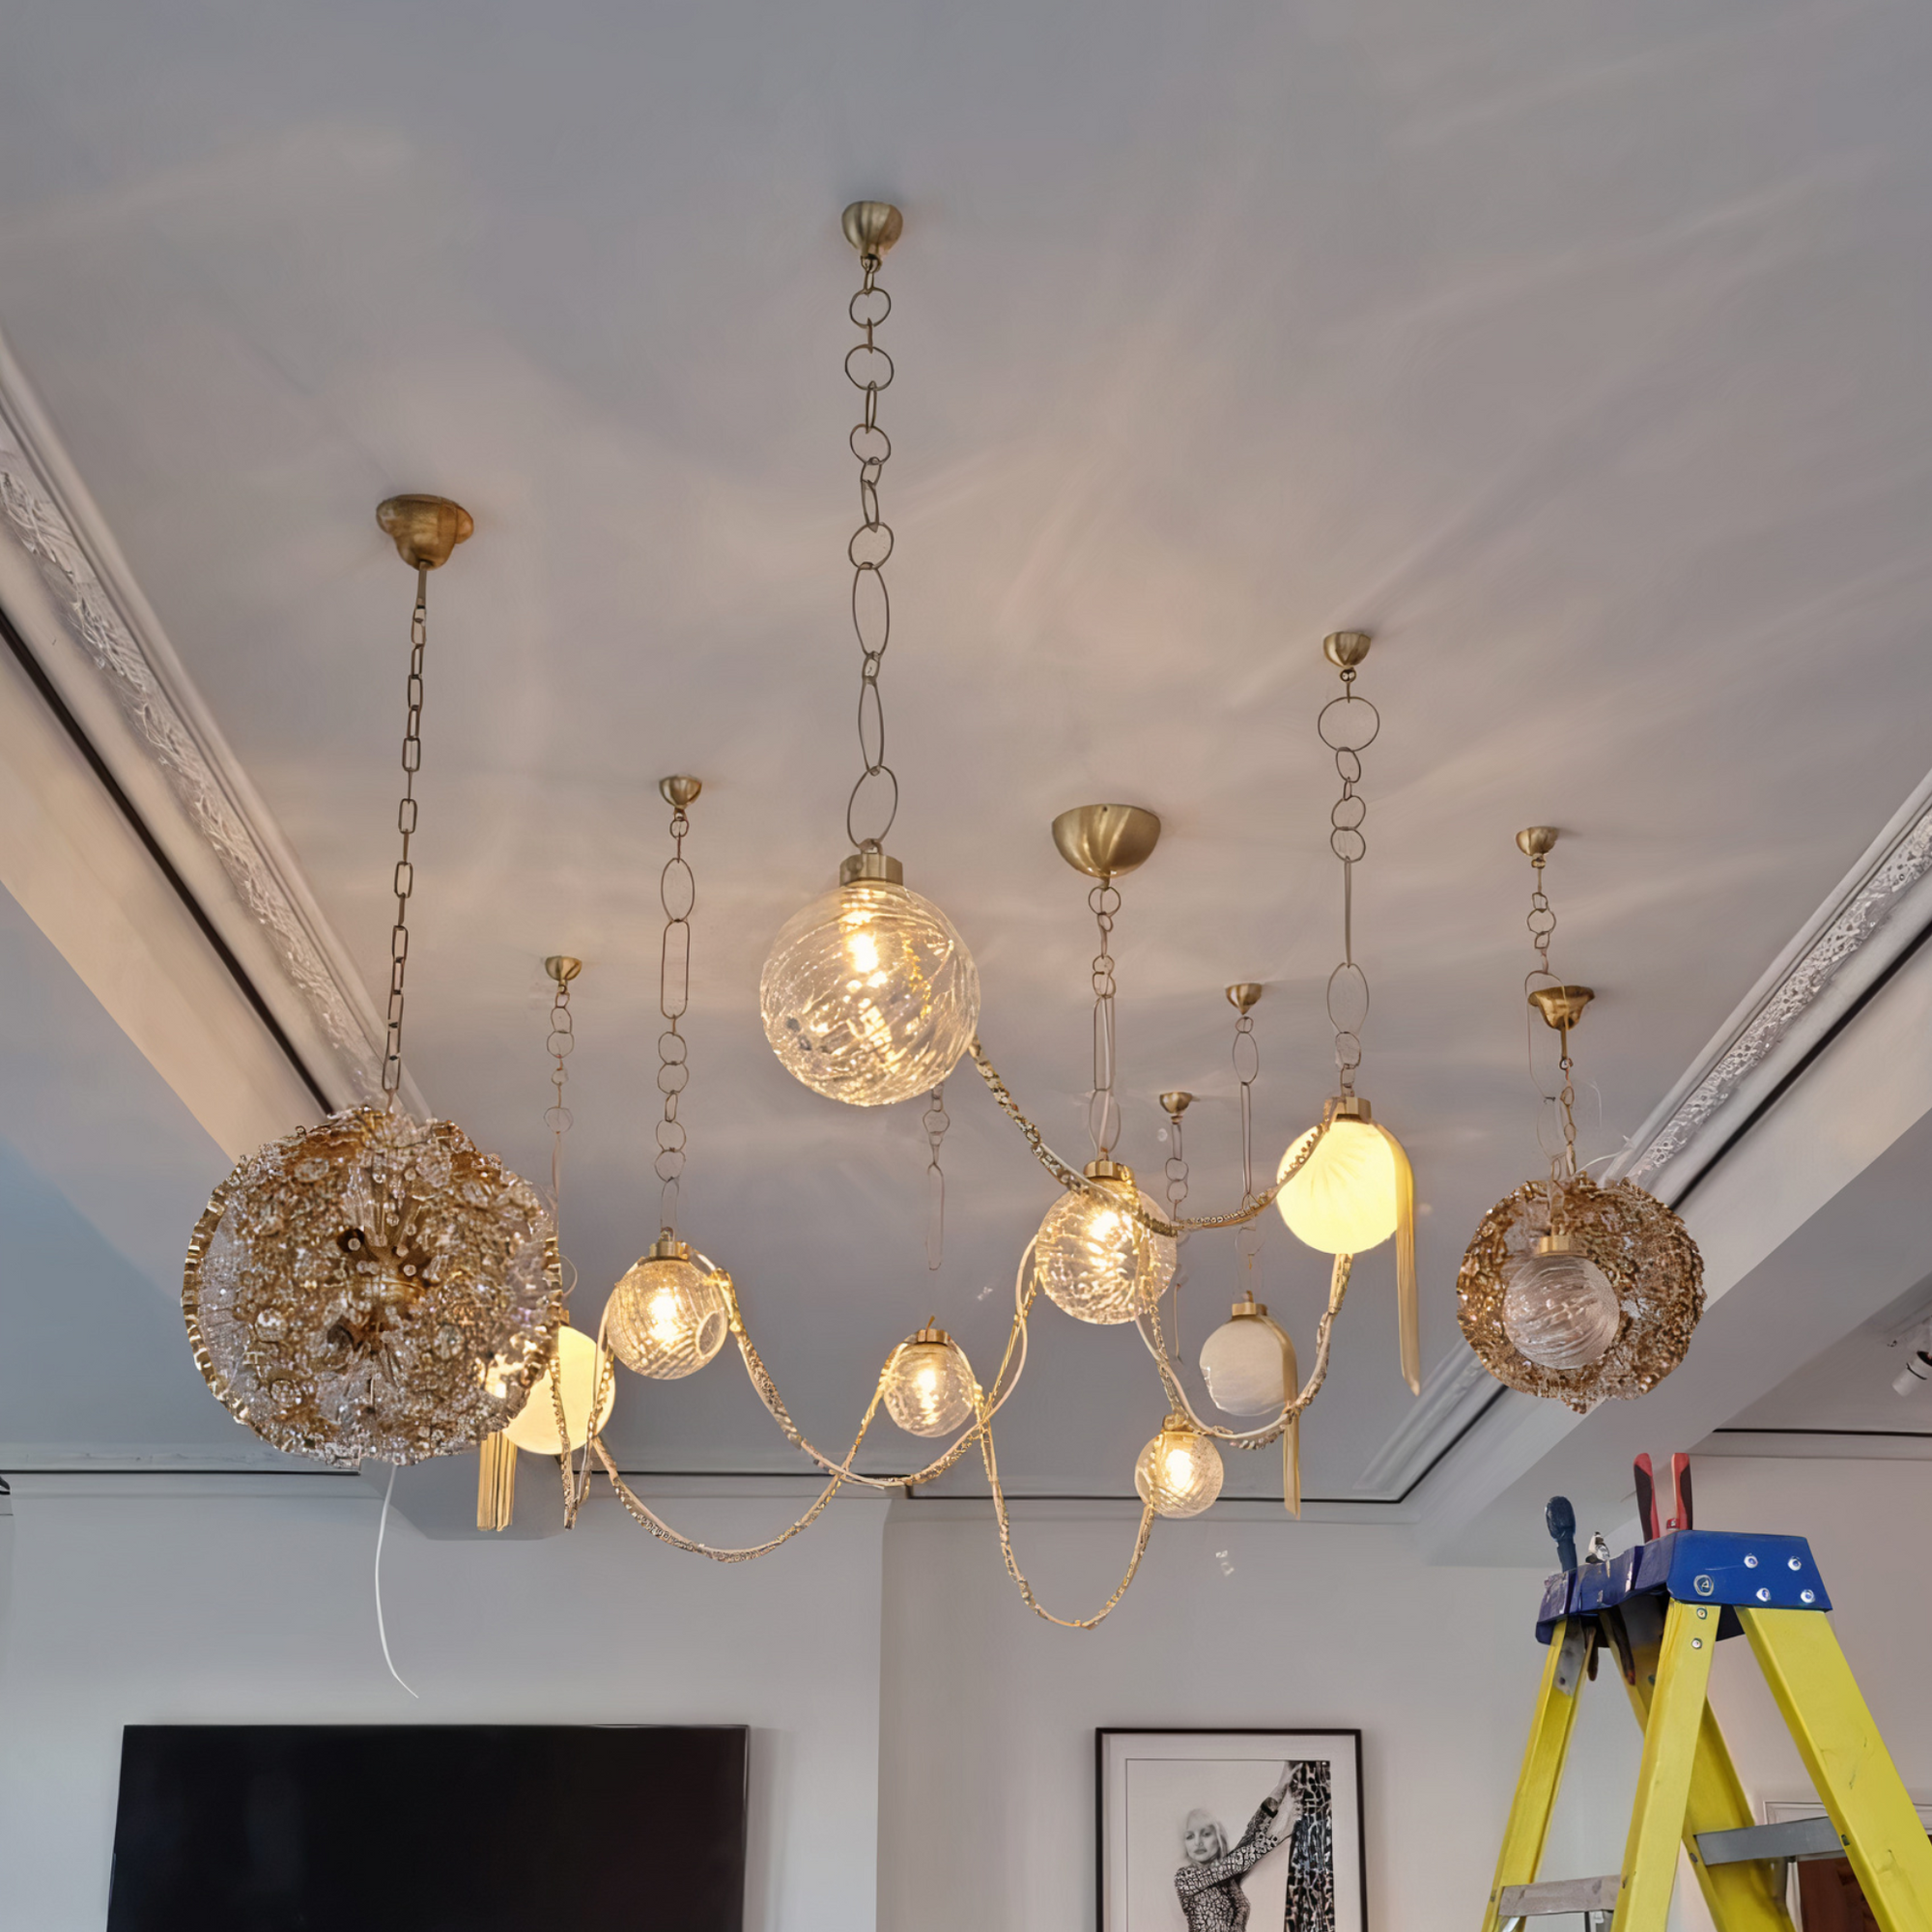 custom ceiling light installation - bespoke pendant lighting